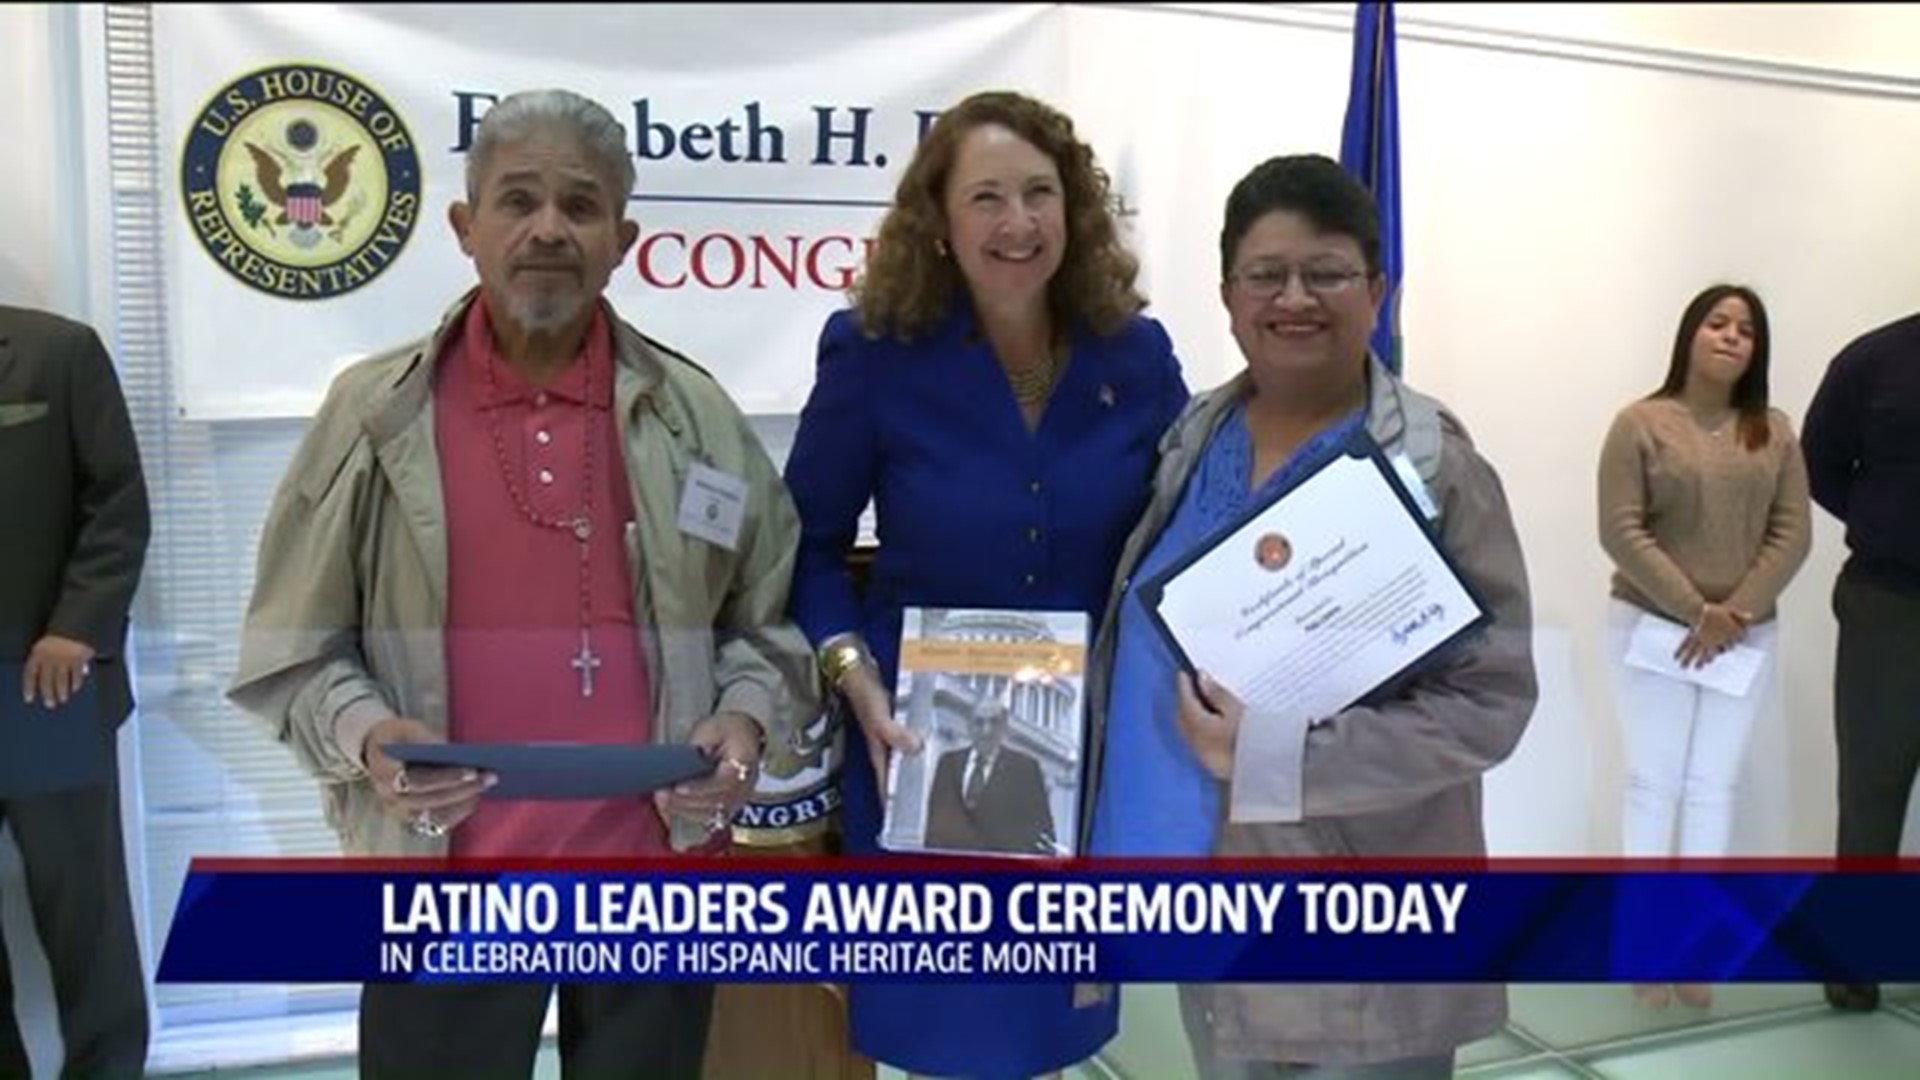 State representative honors local Latino leaders